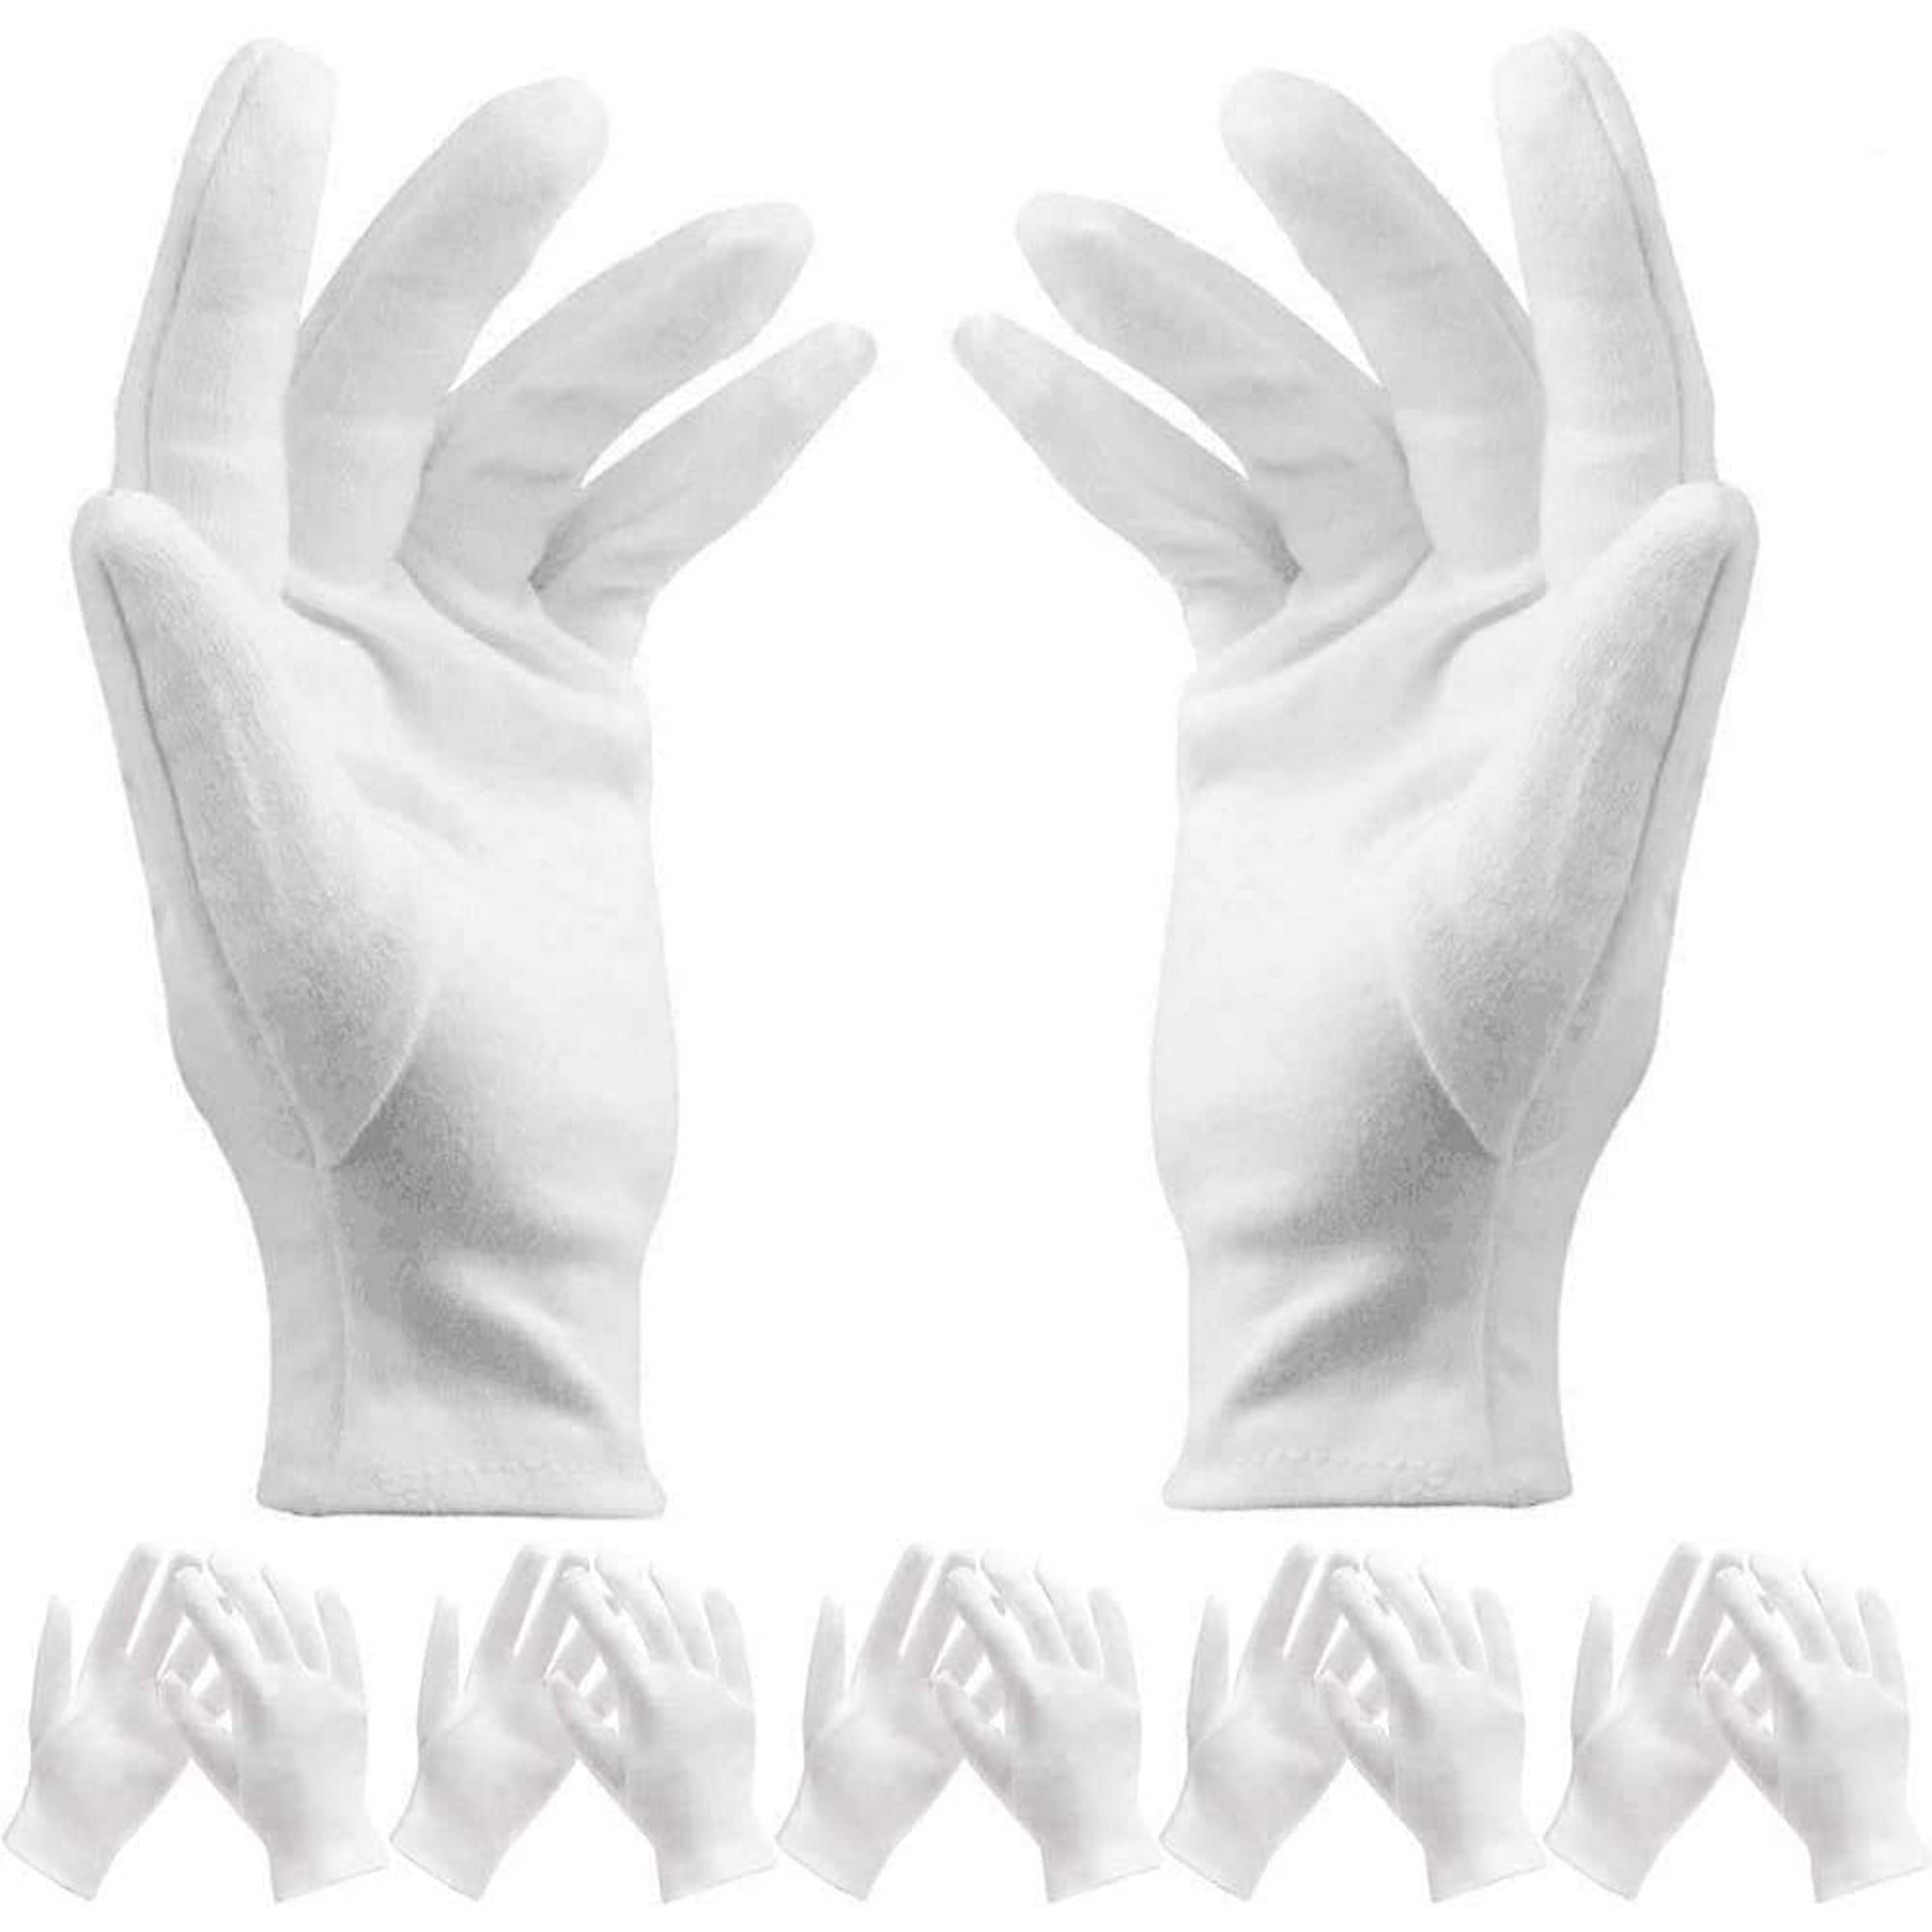 12 pares de guantes de algodón blanco, suaves y transpirables para  inspeccionar joyas oso de fresa Electrónica